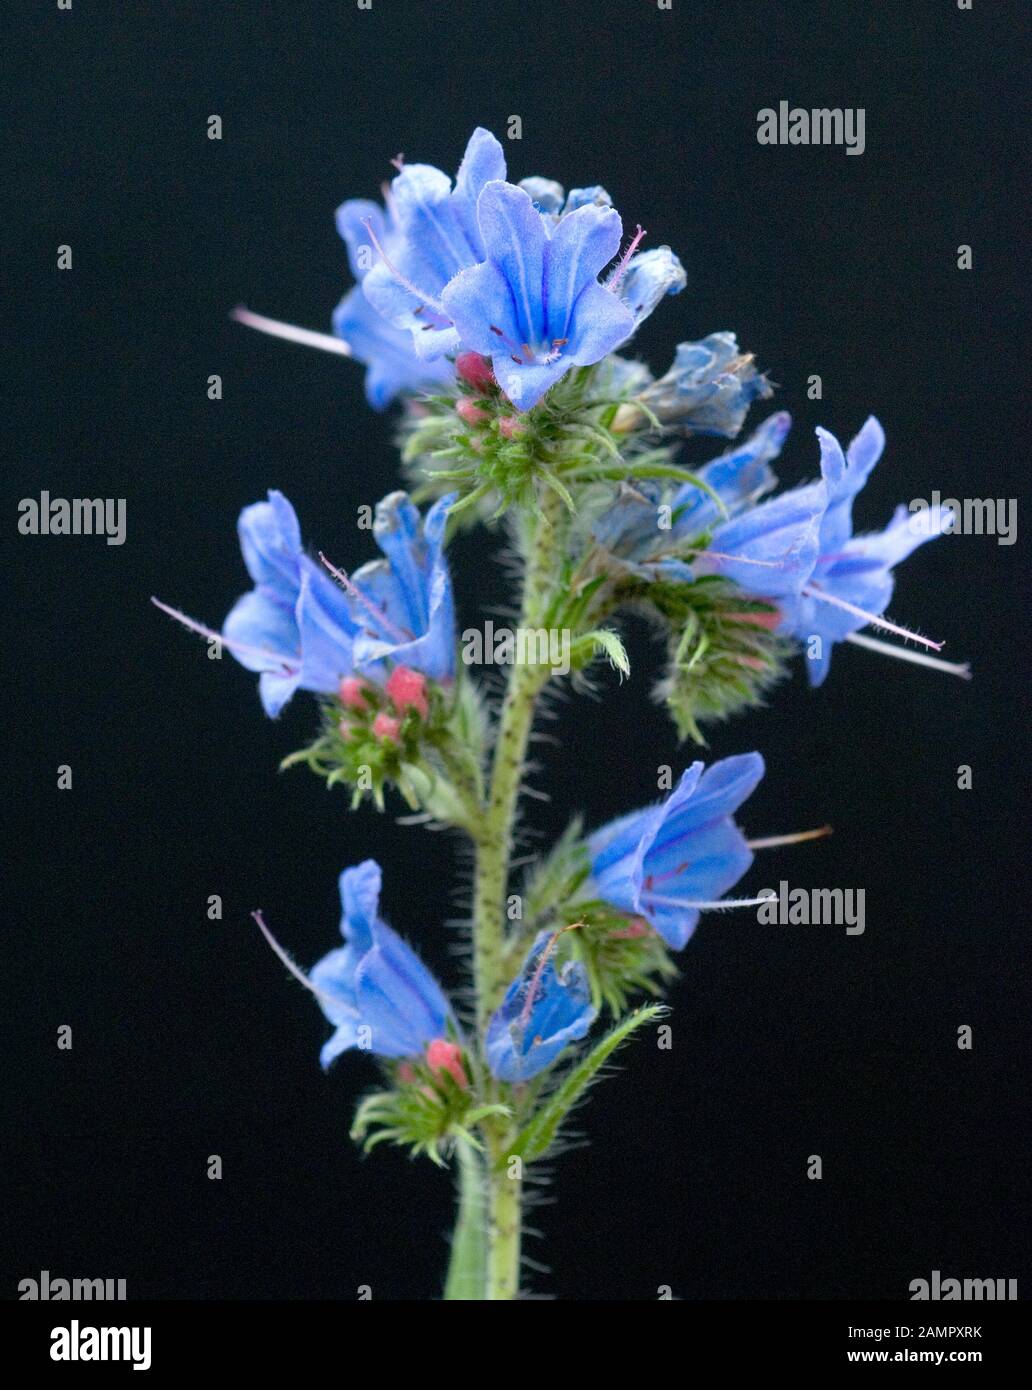 Natternkopf, Echium vulgare, ist eine gute Heil- und Medizinalpflanze und mit blauen Blauen. Schlangenkopf Echium vulgare ist ein wichtiges medicina Stockfoto